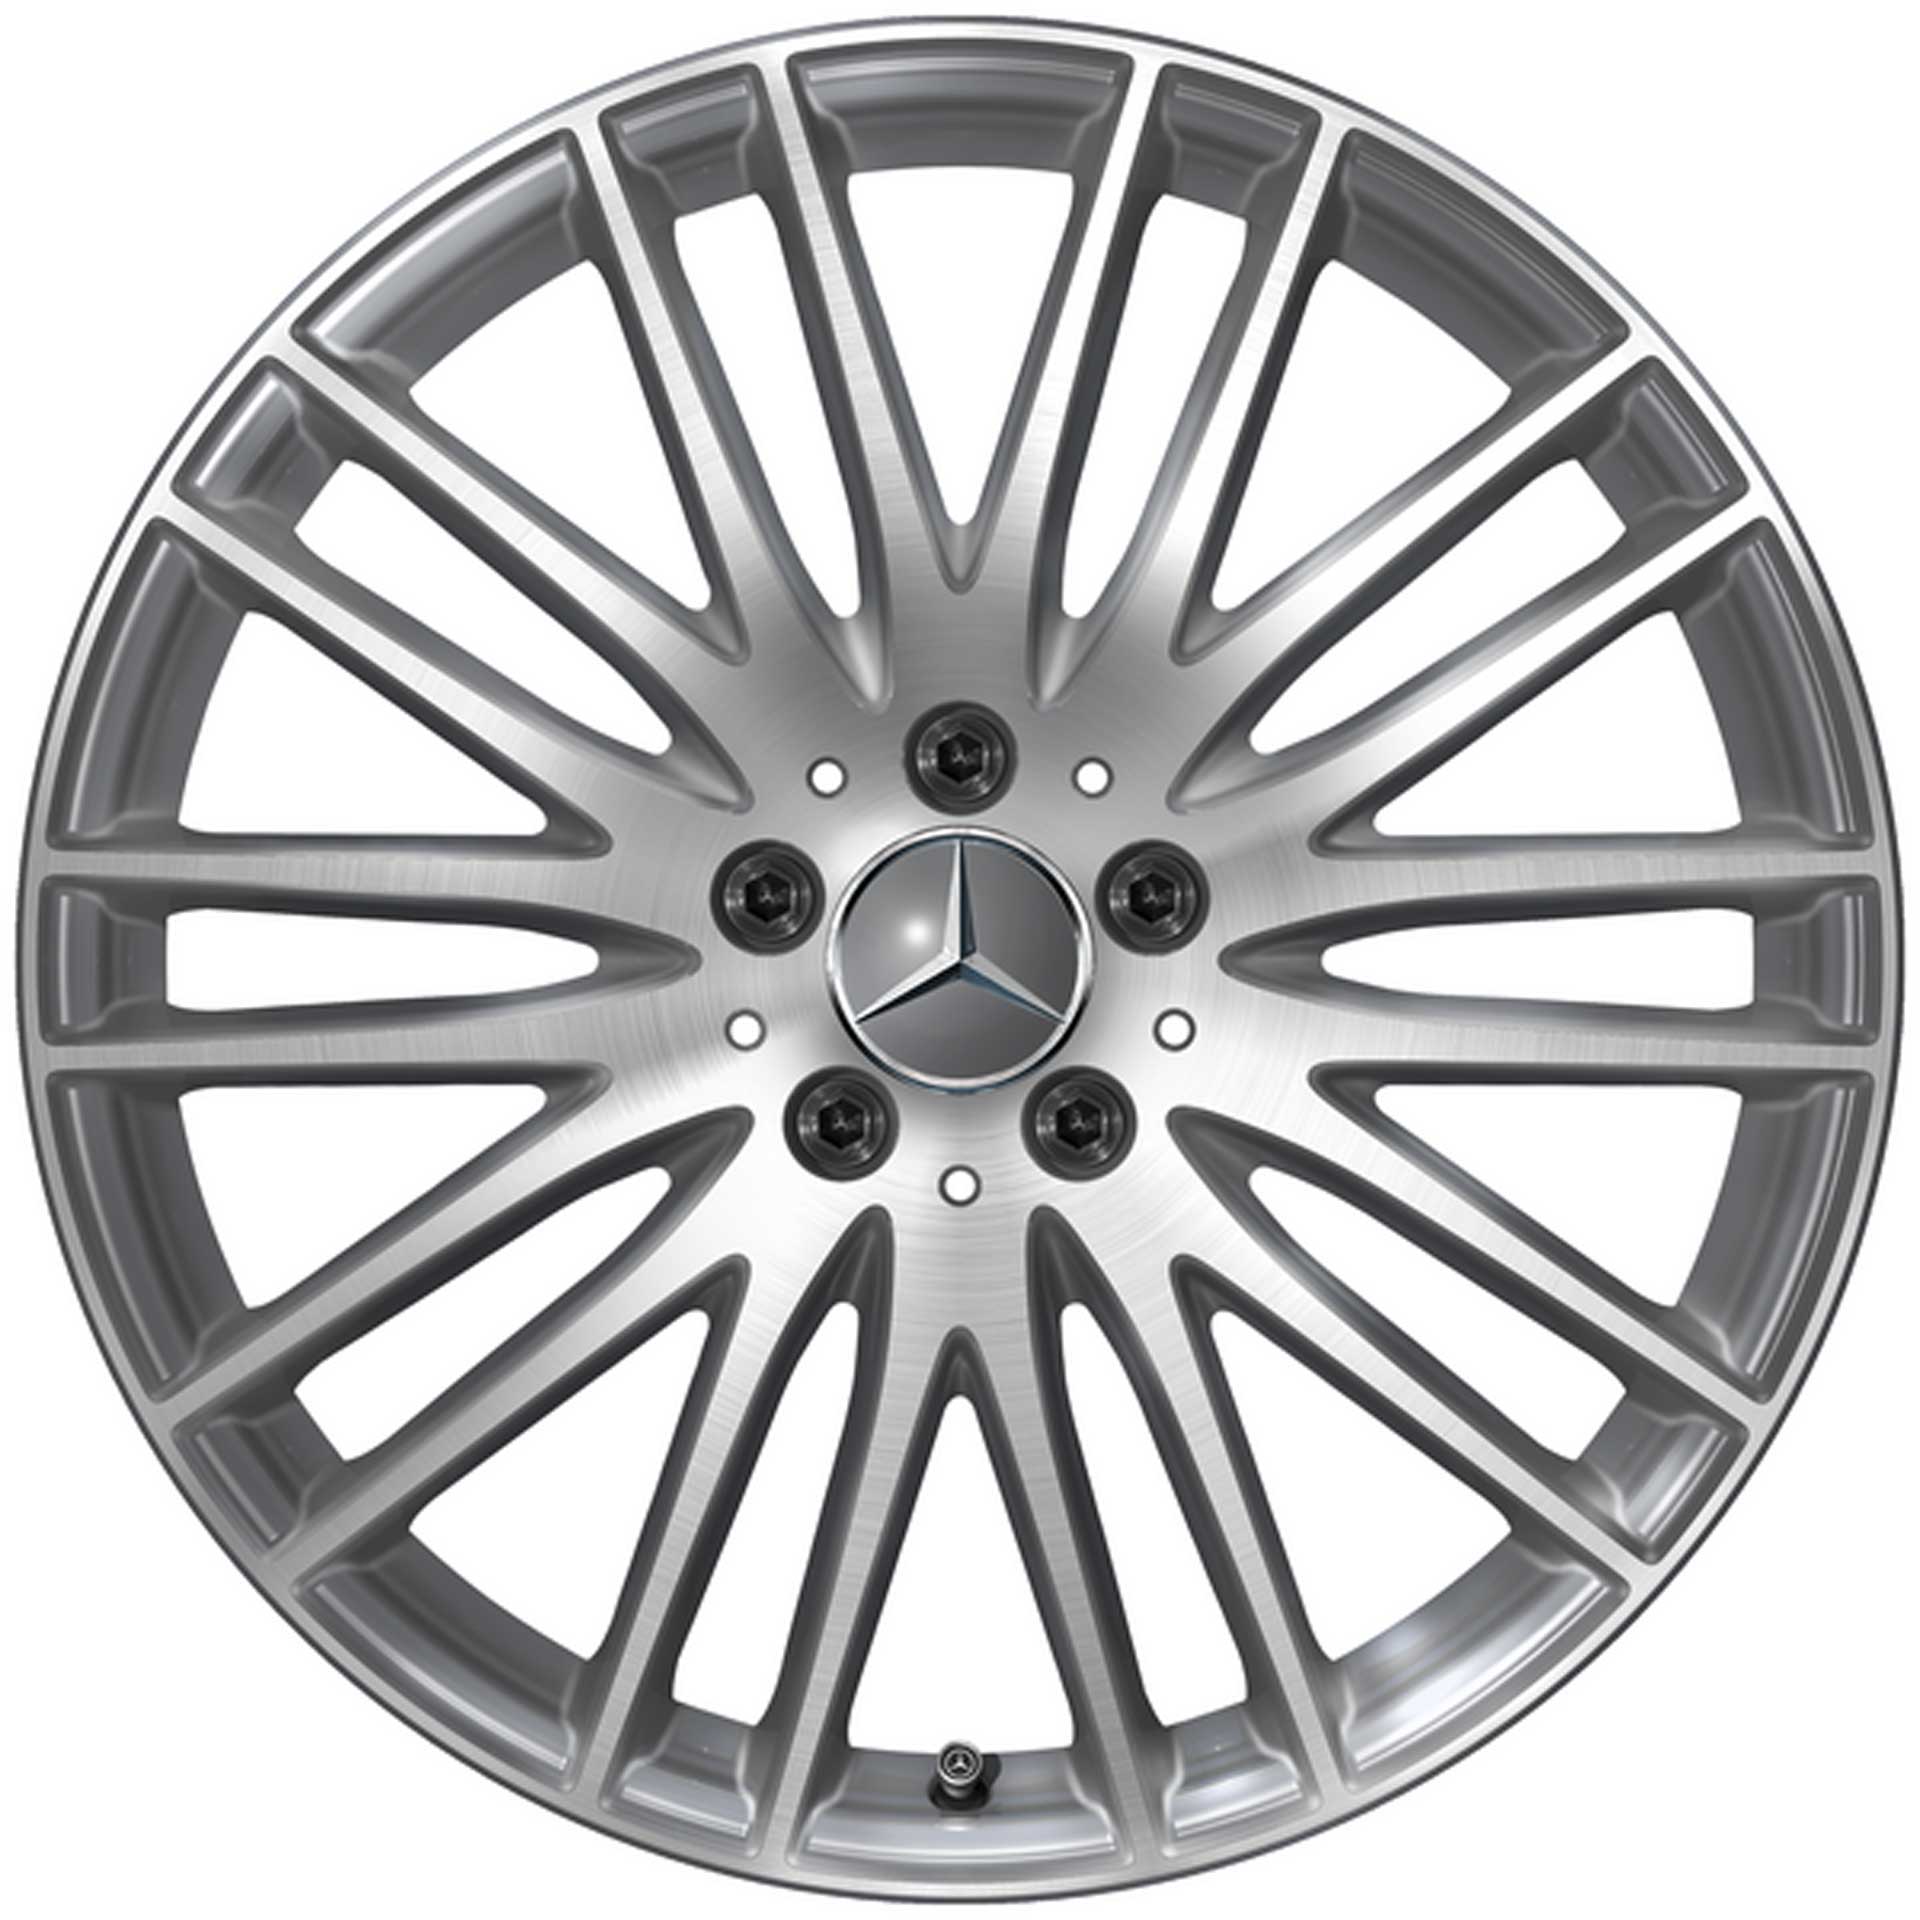 Mercedes-Benz Vielspeichen-Rad 19 Zoll Leichtmetallfelge GLC X254 tremolit-metallic glanzgedreht A25440149007X44